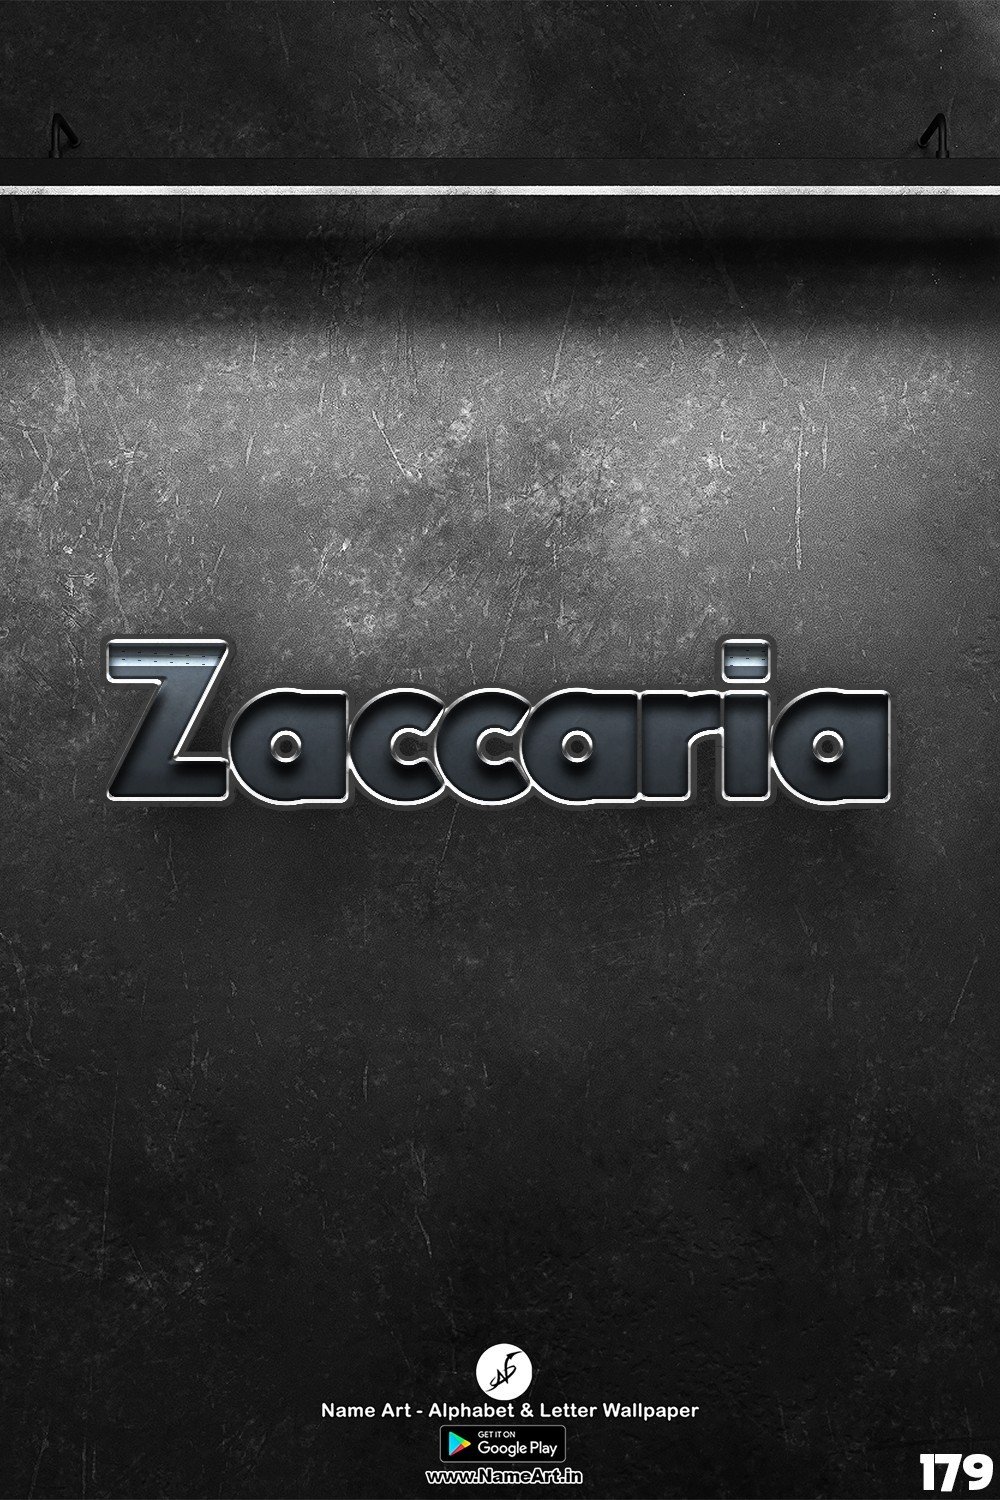 Zaccaria | Whatsapp Status Zaccaria | Happy Birthday Zaccaria !! | New Whatsapp Status Zaccaria Images |